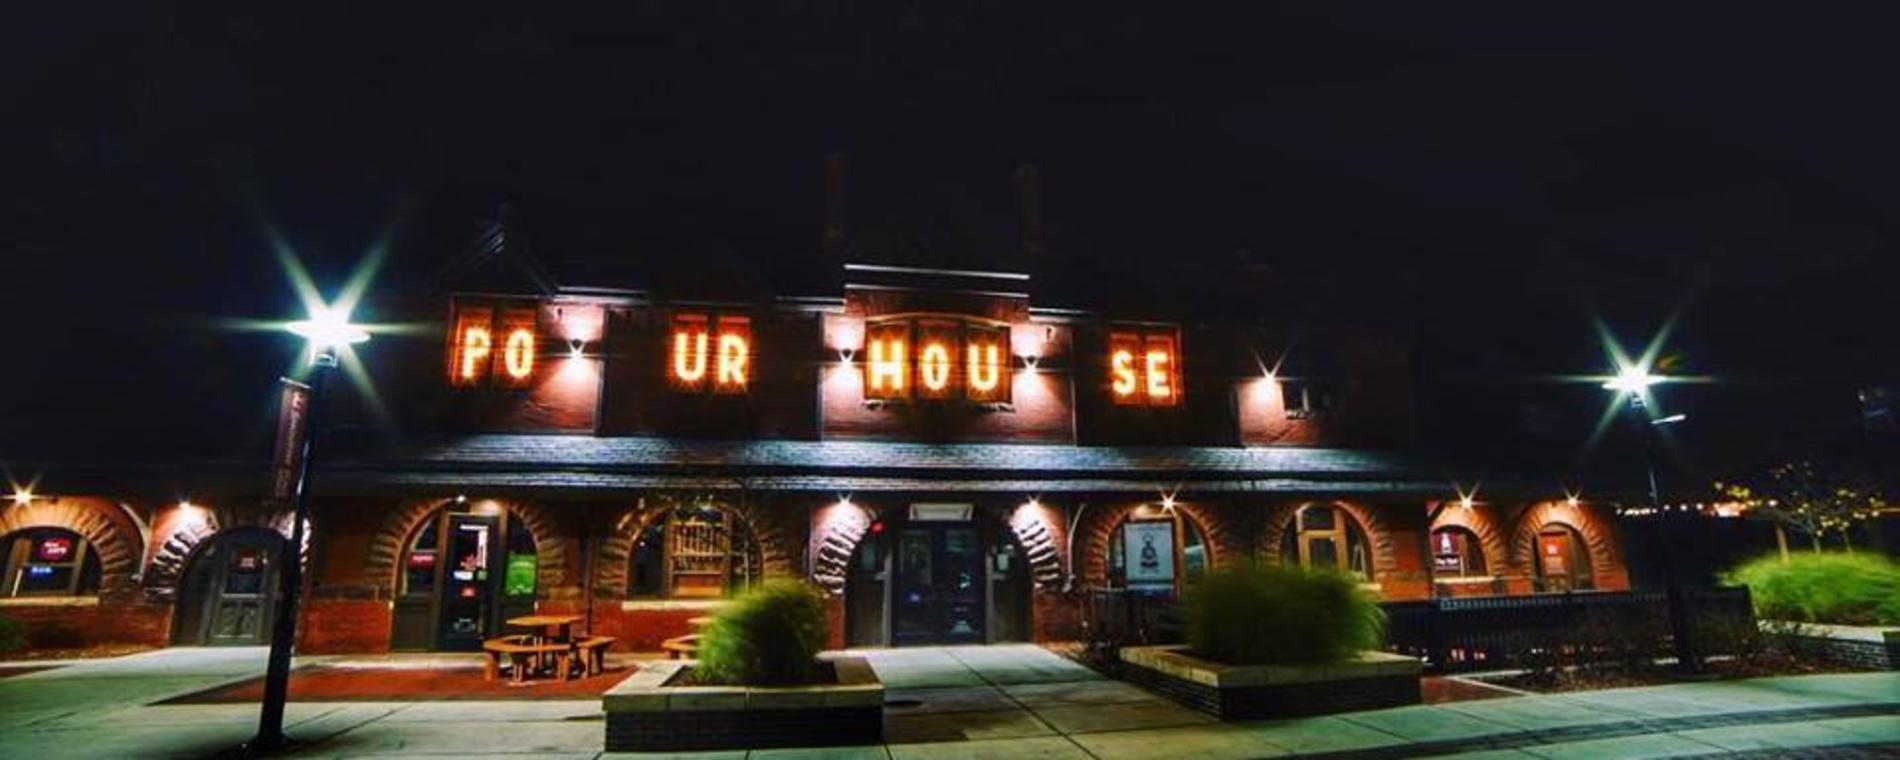 PourHouse night exterior Visit Wichita